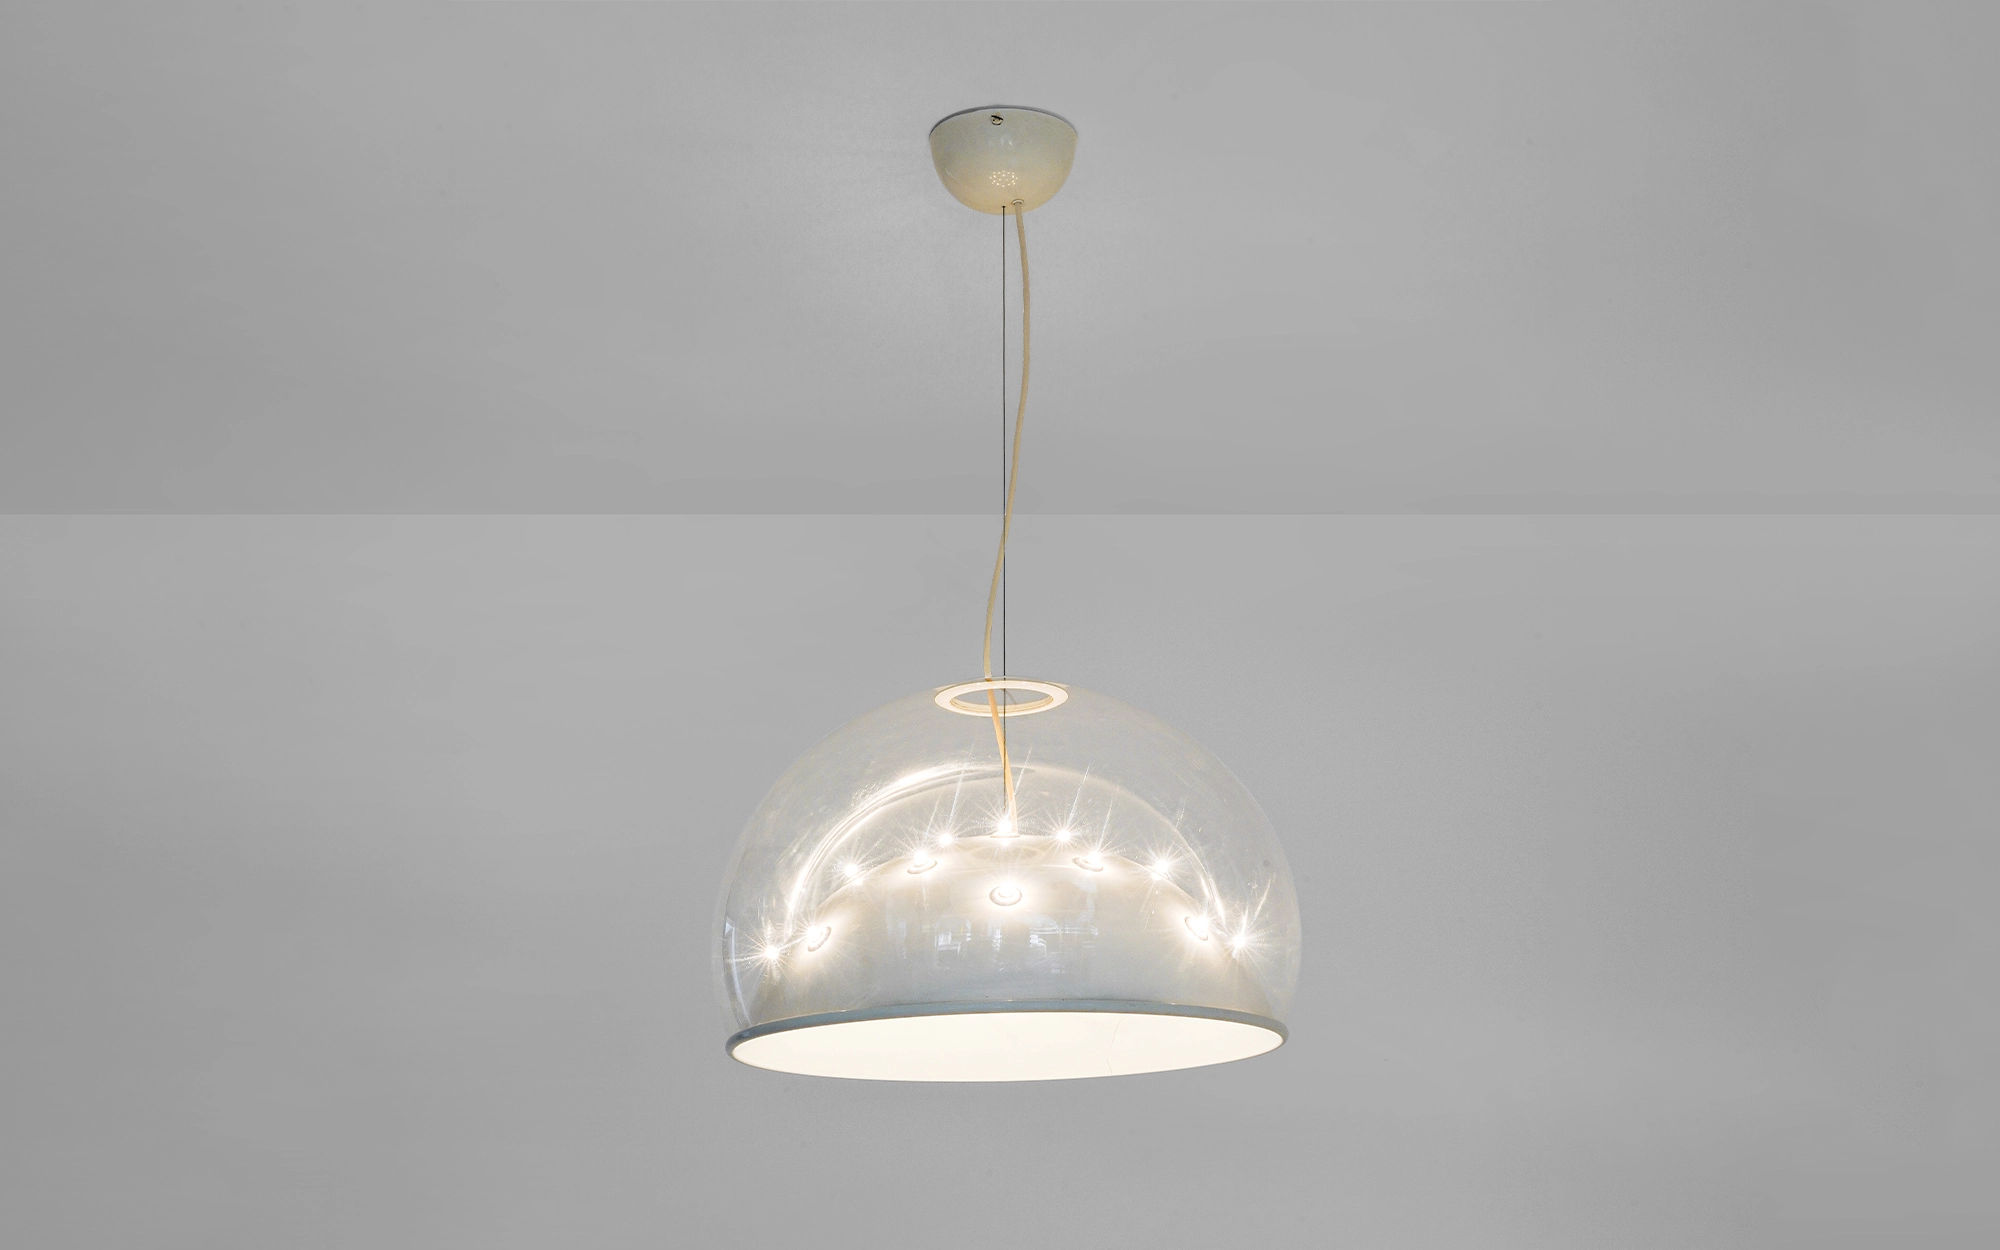 2130 - Gino Sarfatti - Table light - Galerie kreo